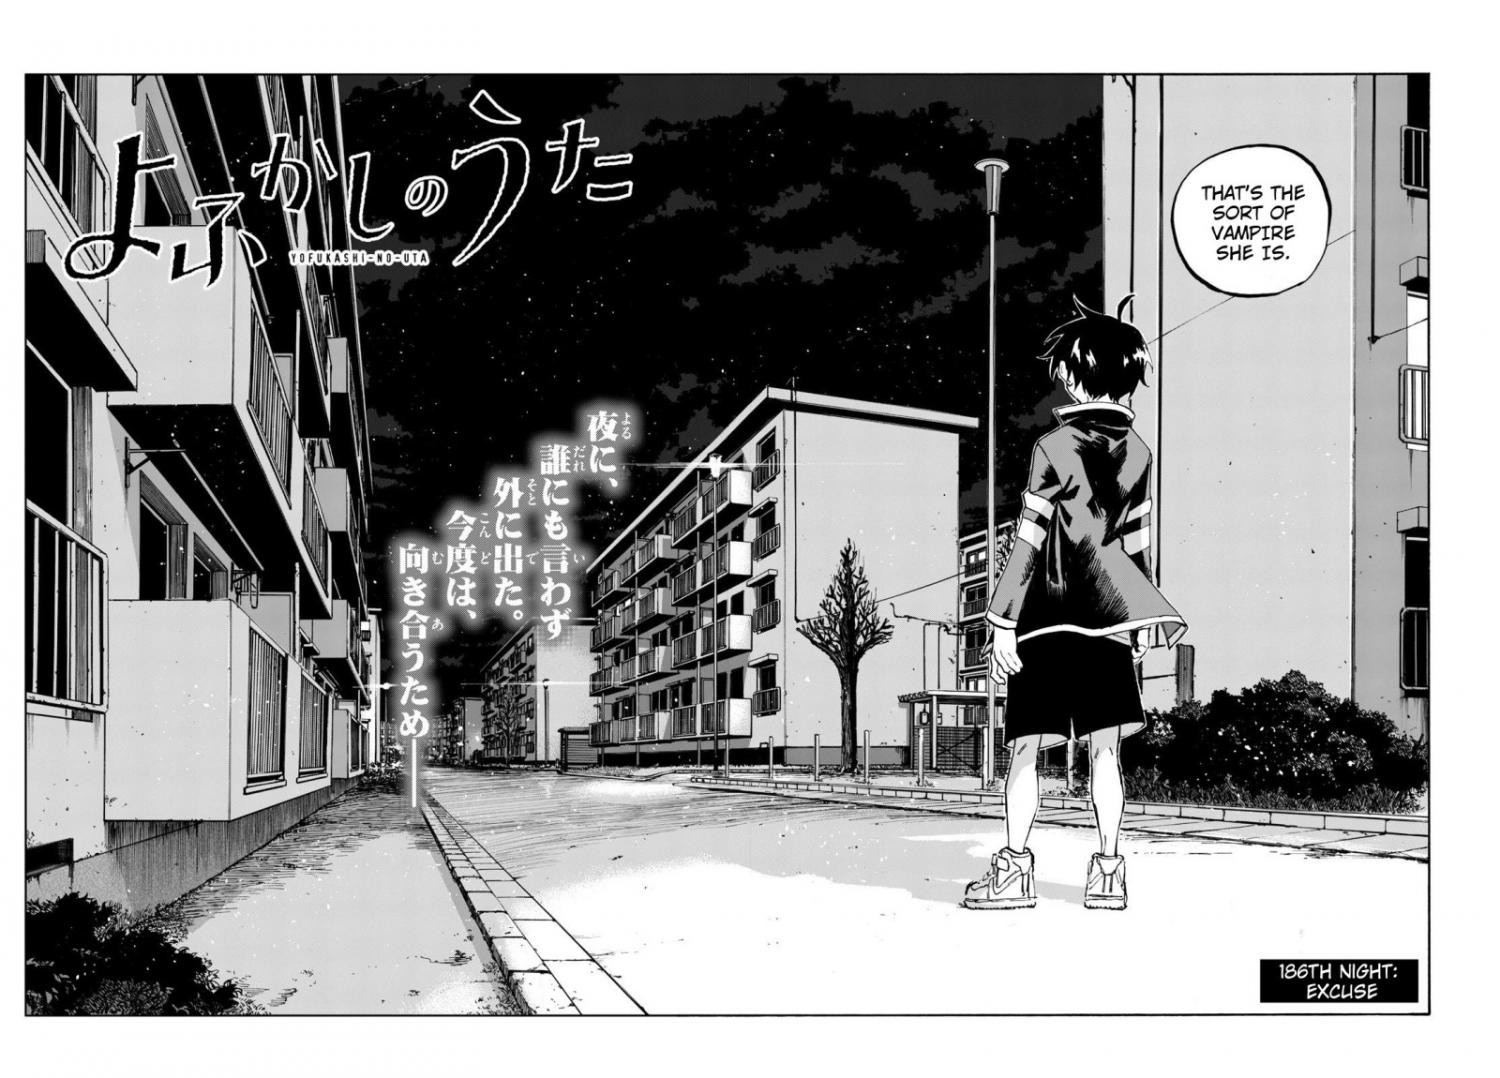 Yofukashi no Uta Ch.182.5 Page 5 - Mangago